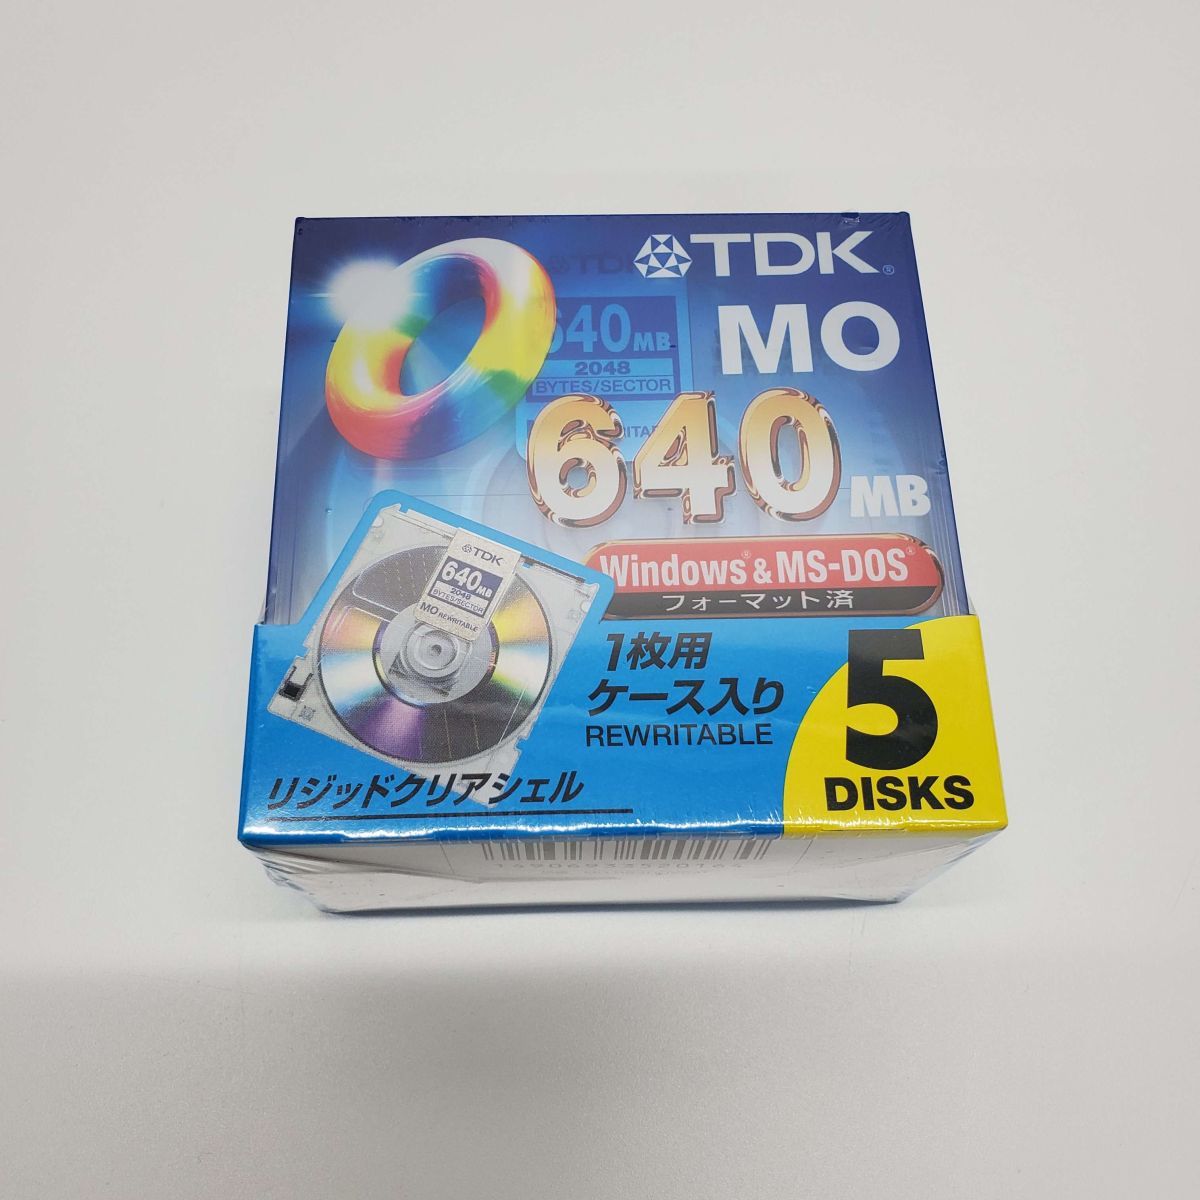 @T0632[ нераспечатанный товар ]TDK MO 640MB Windows&MS-DOS формат завершено MO-R640DA MO диск 5 шт. комплект 